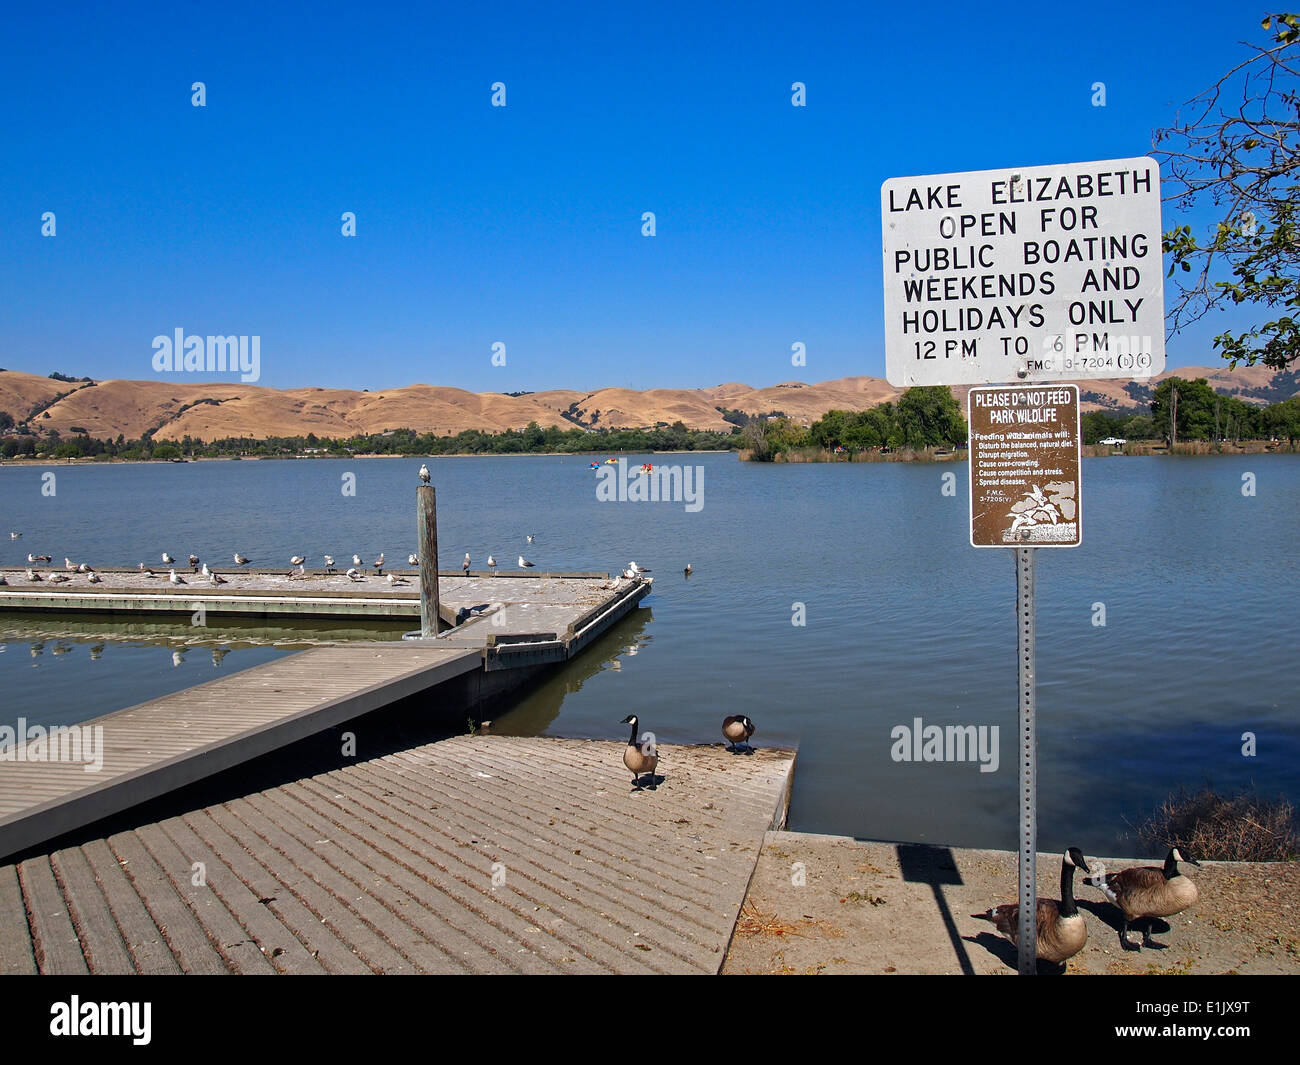 Signs, Do Not feed wildlife, public boating, Lake Elizabeth Fremont California USA Stock Photo